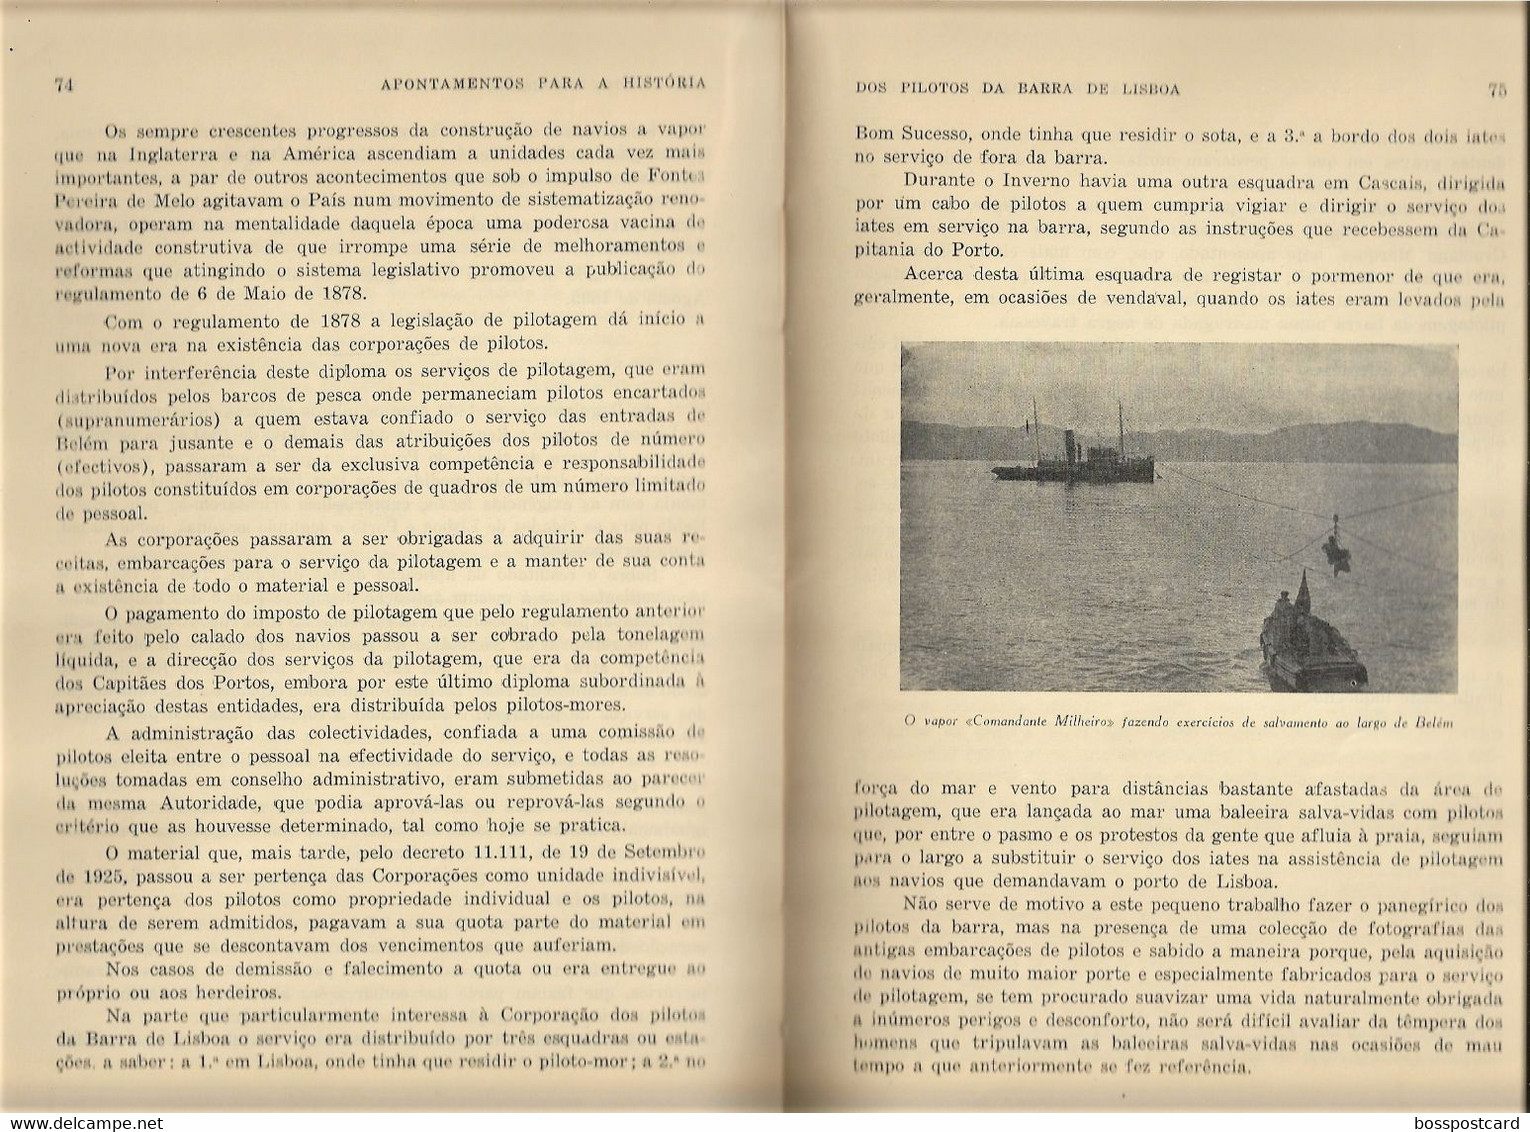 Lisboa - Apontamentos para a História dos Pilotos da Barra de Lisboa, 1957 - Marinha - Barco - Navio - Paquete Portugal